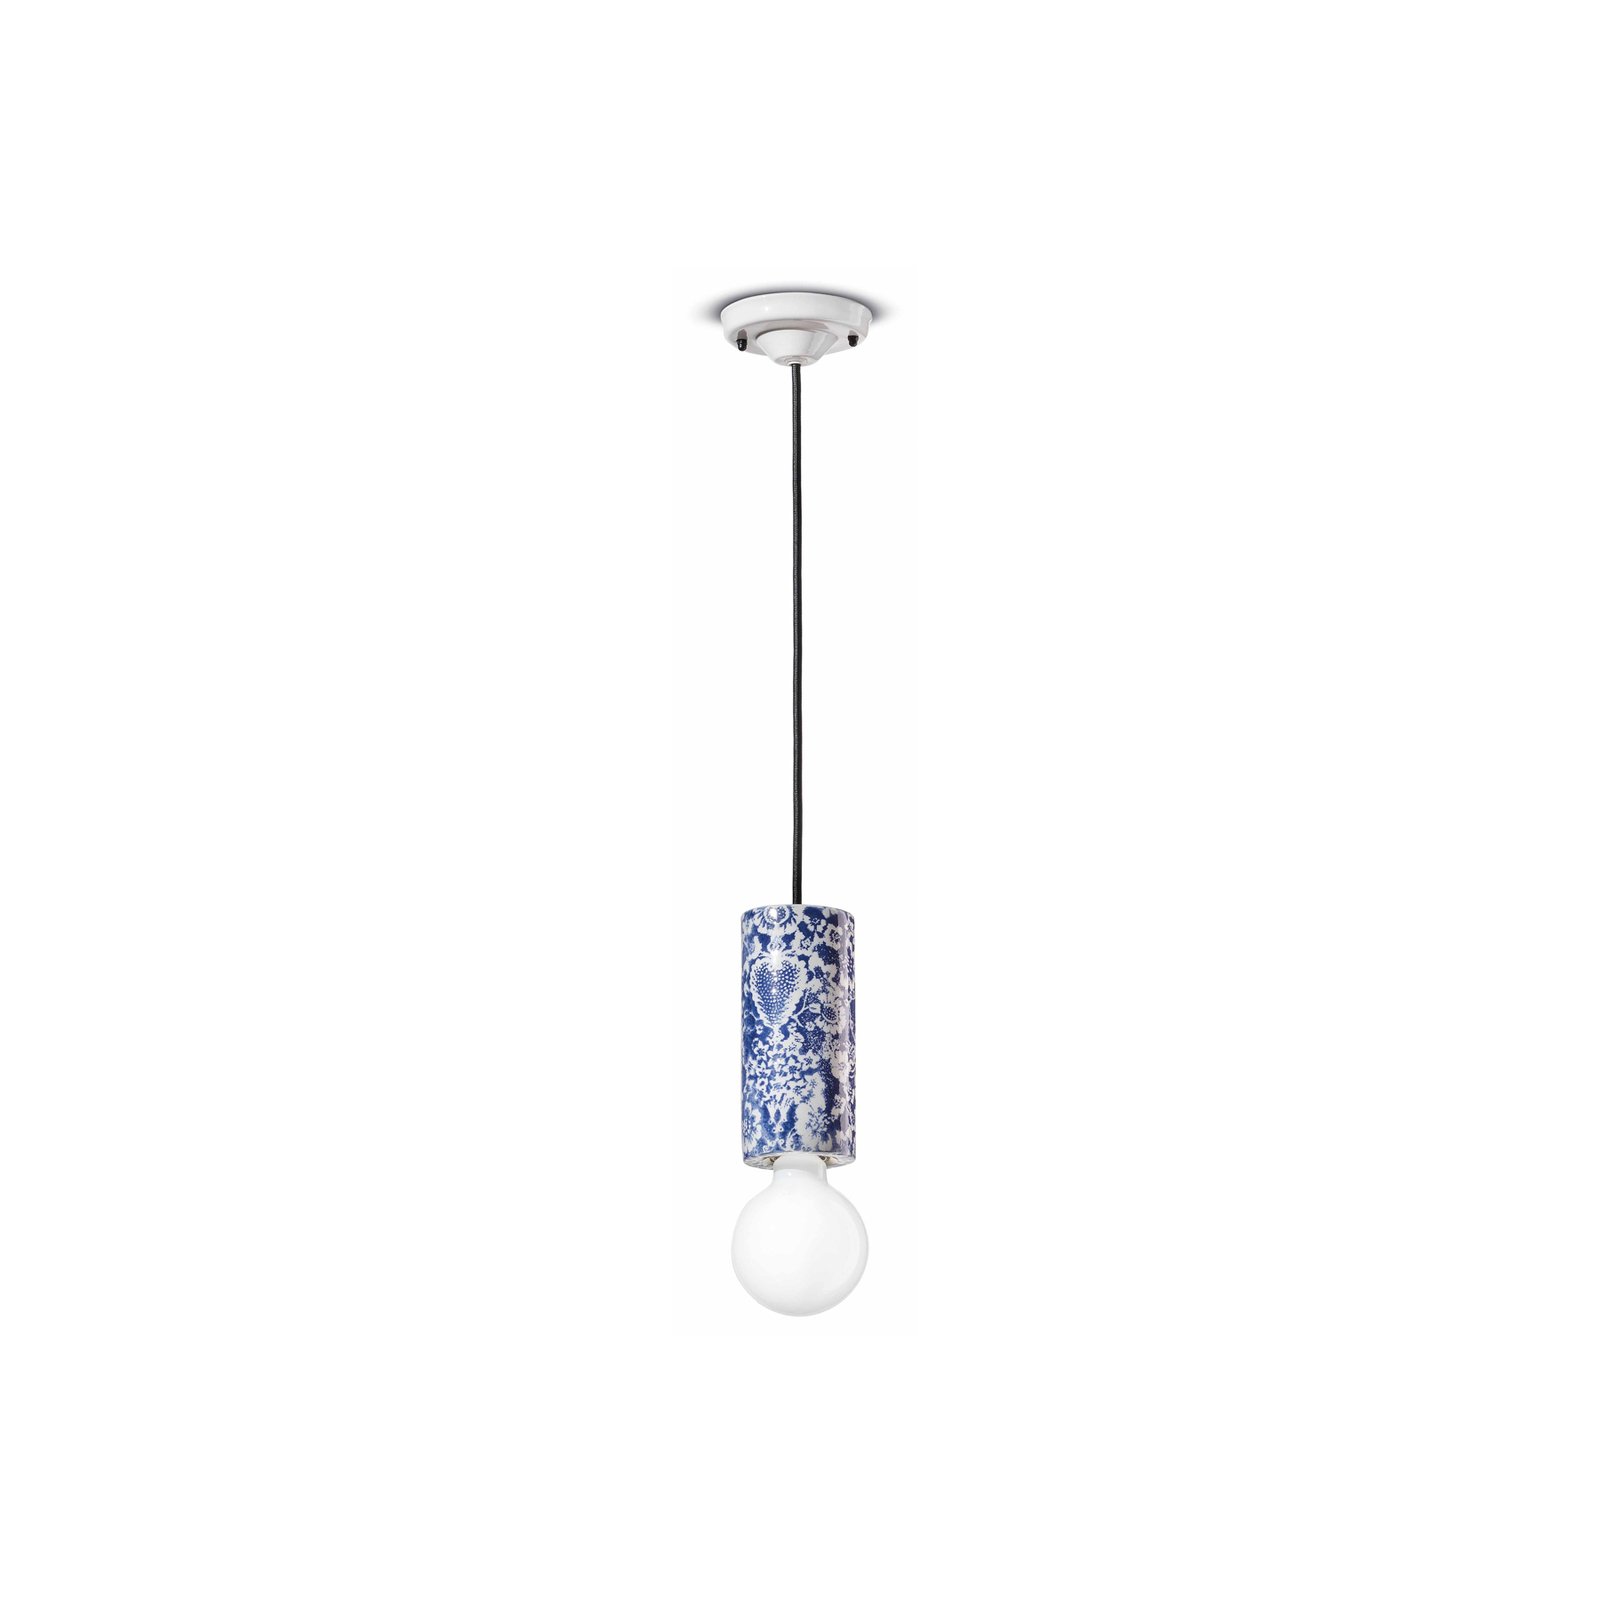 PI hanging light, floral pattern Ø 8 cm blue/white